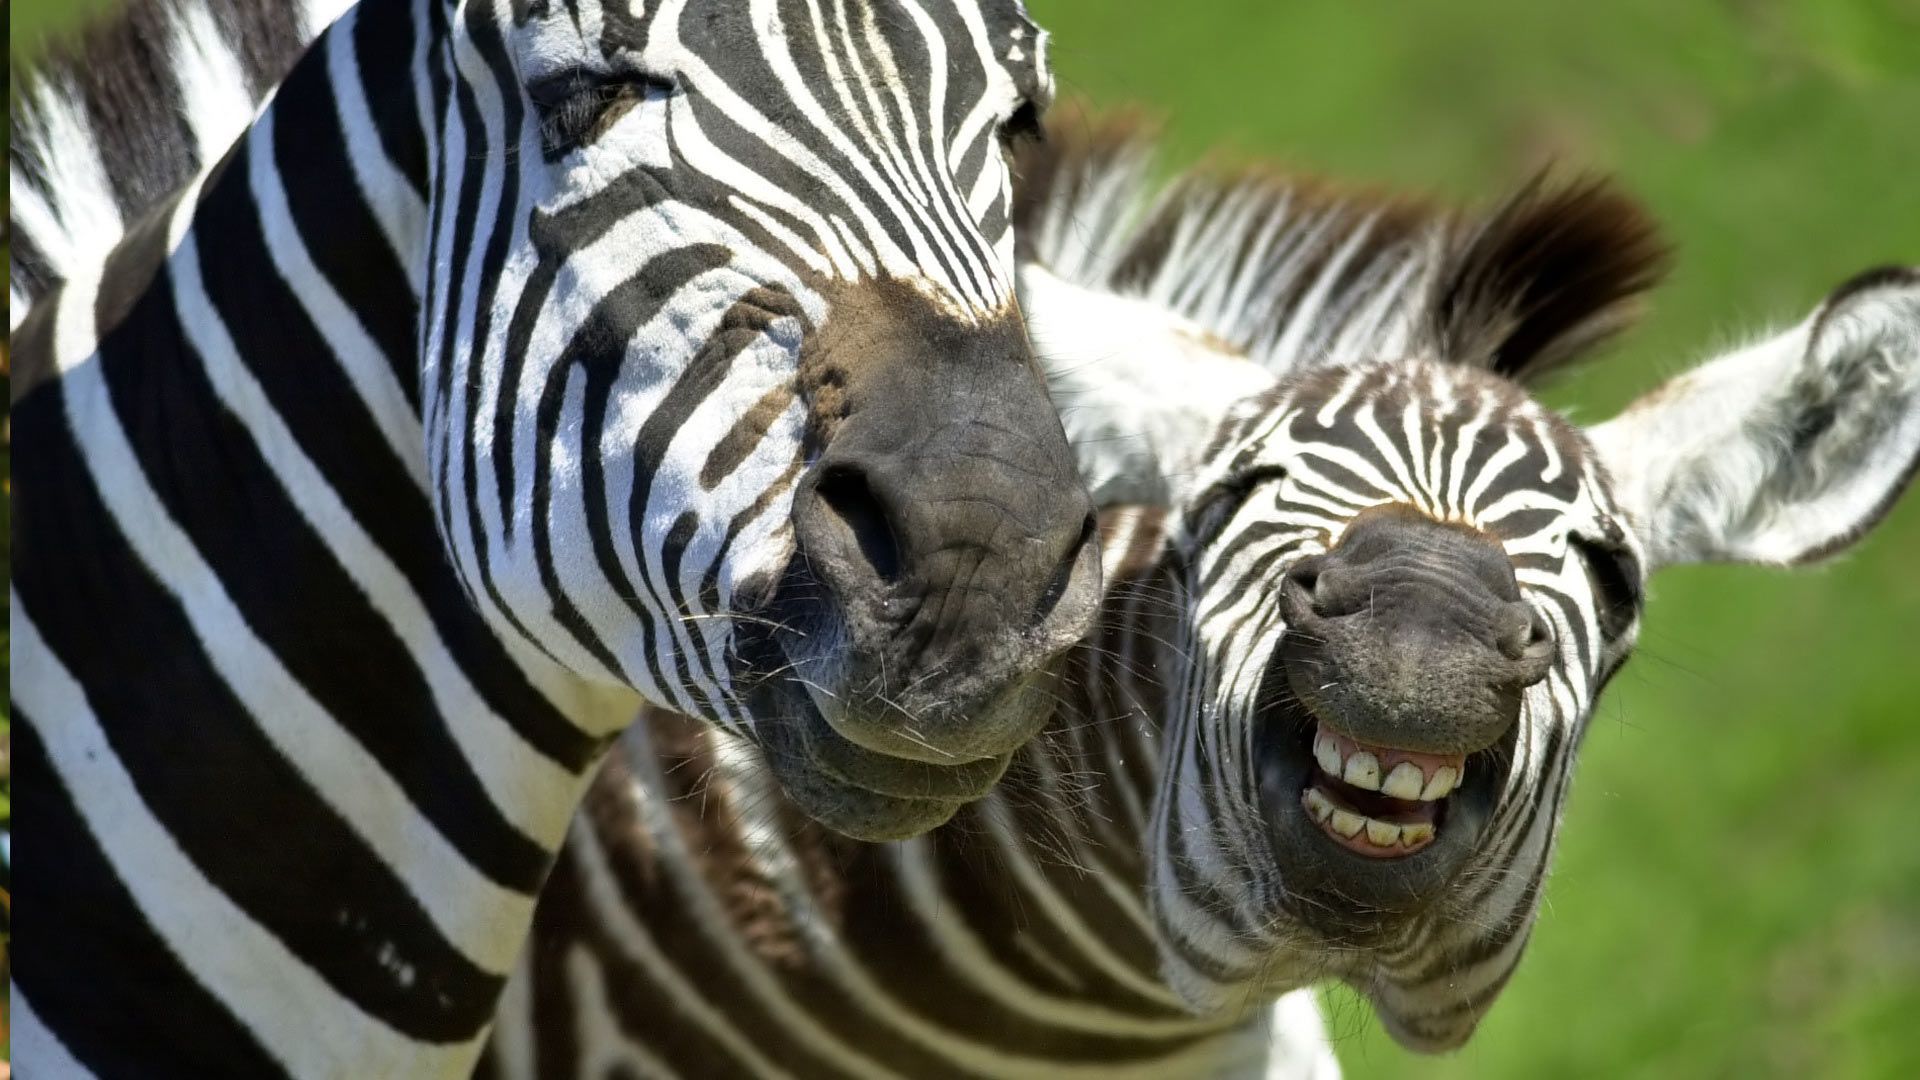 Zebra Desktop Backgrounds images